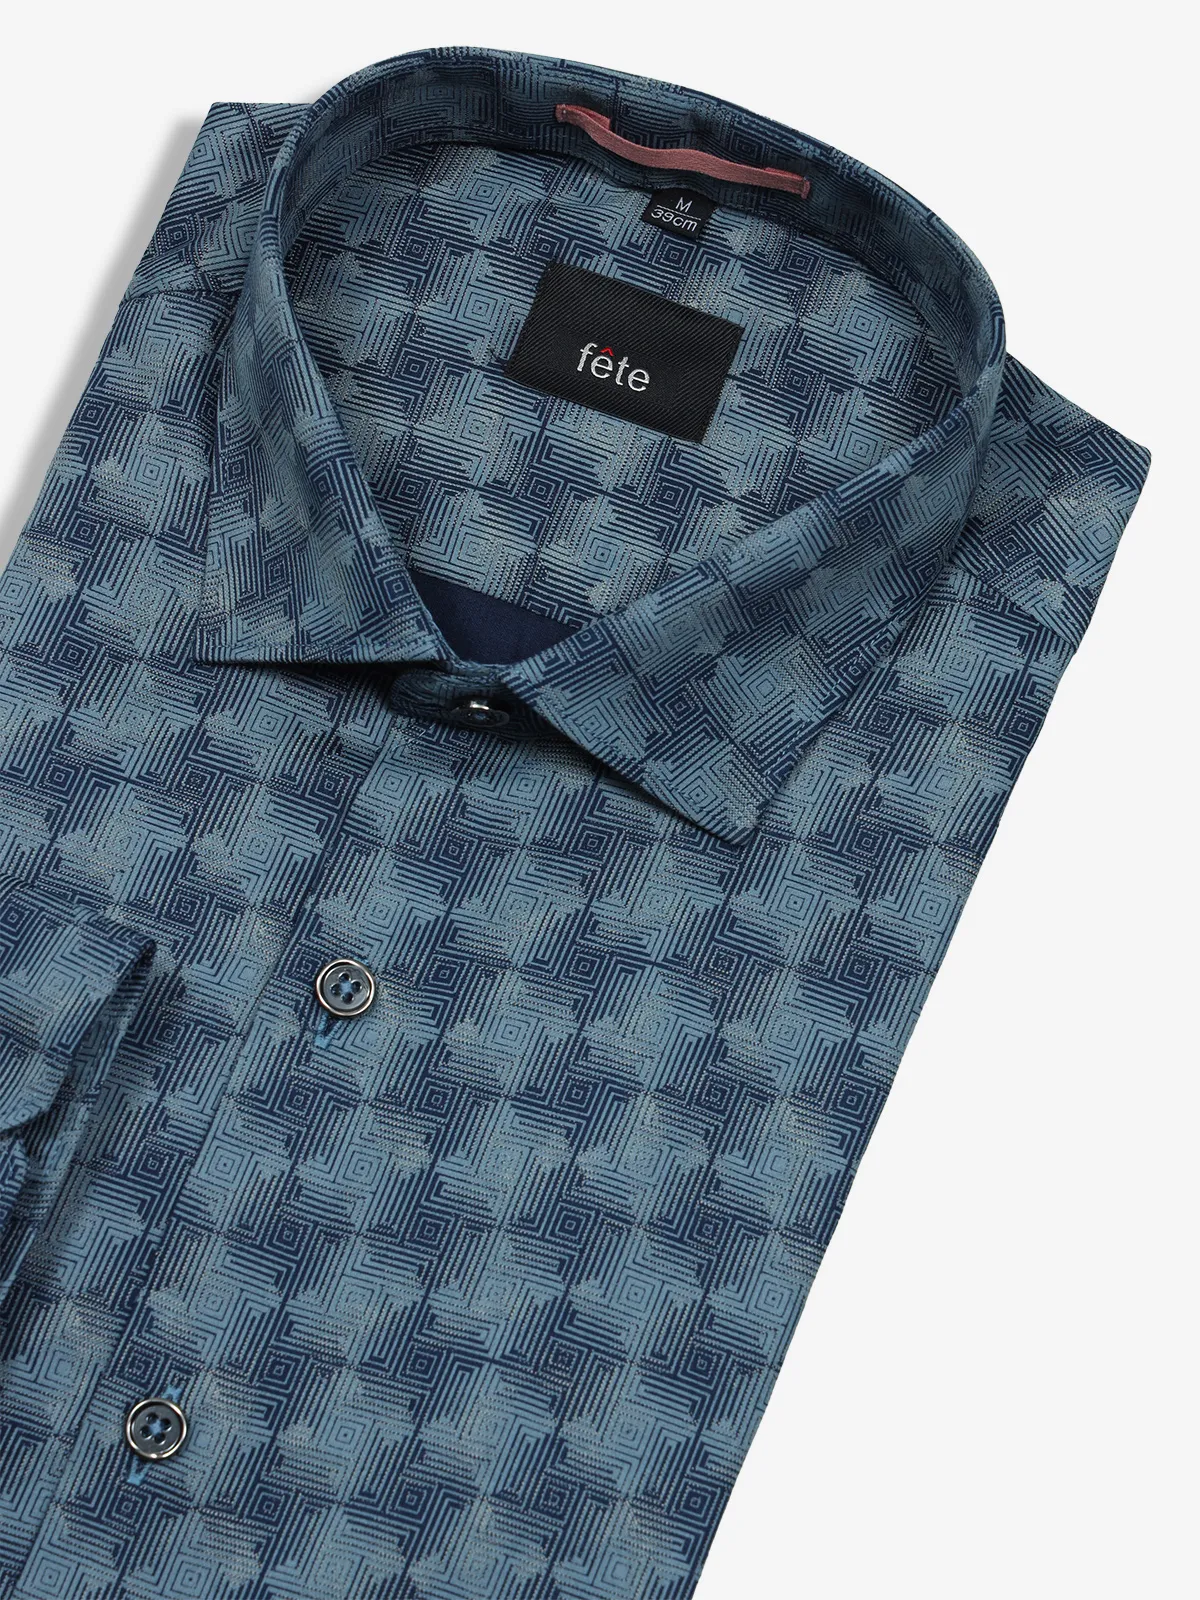 FETE navy cotton texture shirt